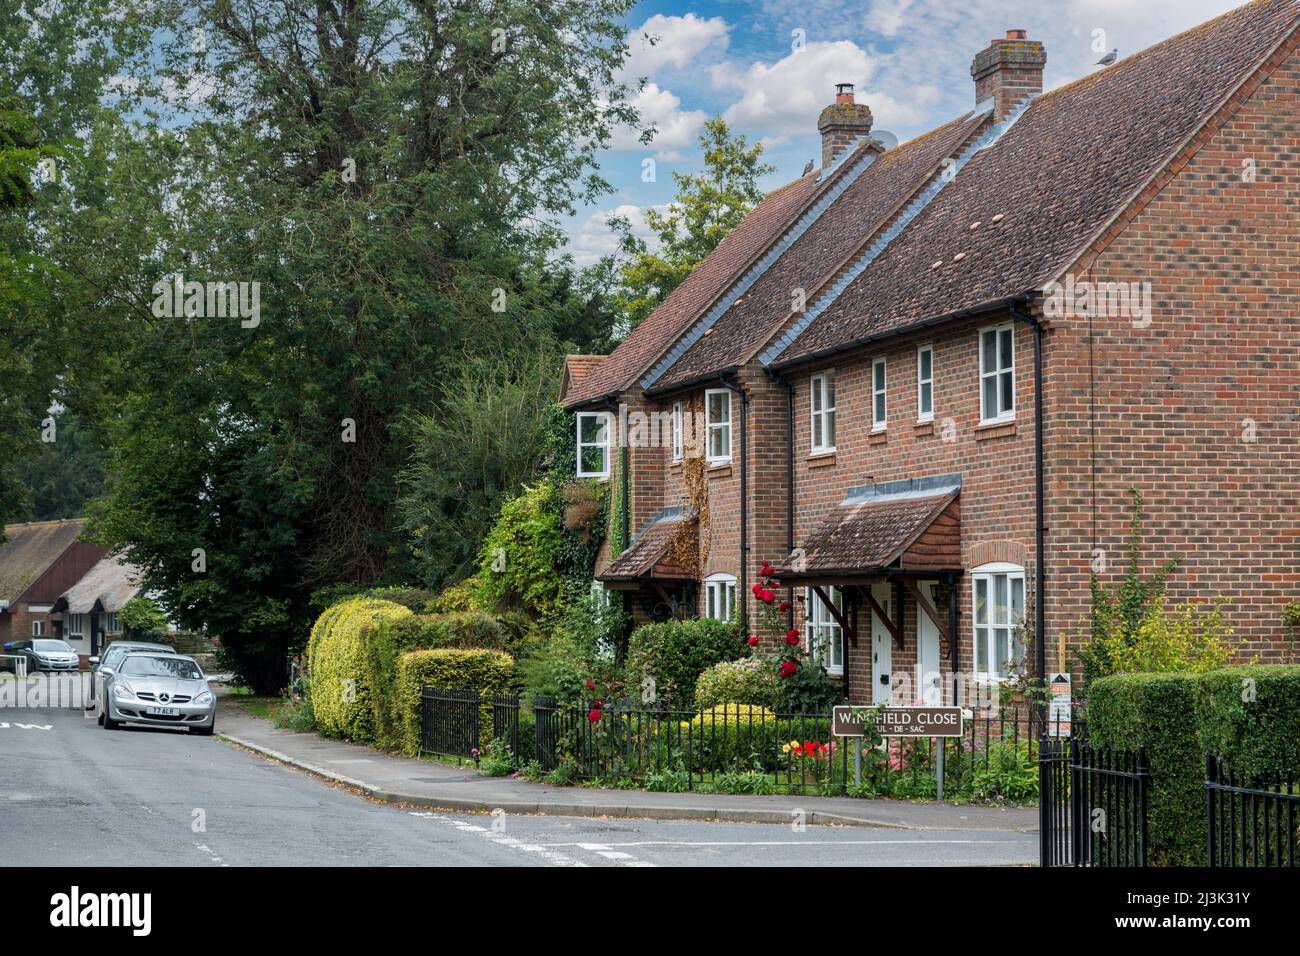 Reino Unido, Inglaterra, Ewelme. Escena de una calle tranquila en un pequeño pueblo inglés. Foto de stock